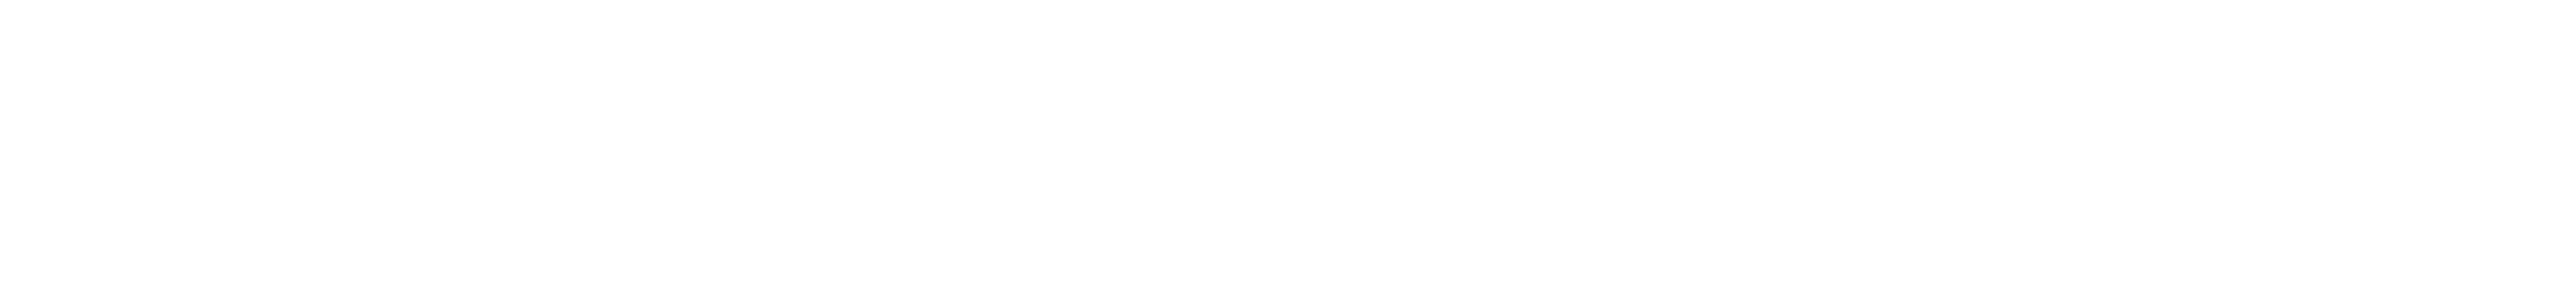 PARTTEAM & OEMKIOSKS - Logo